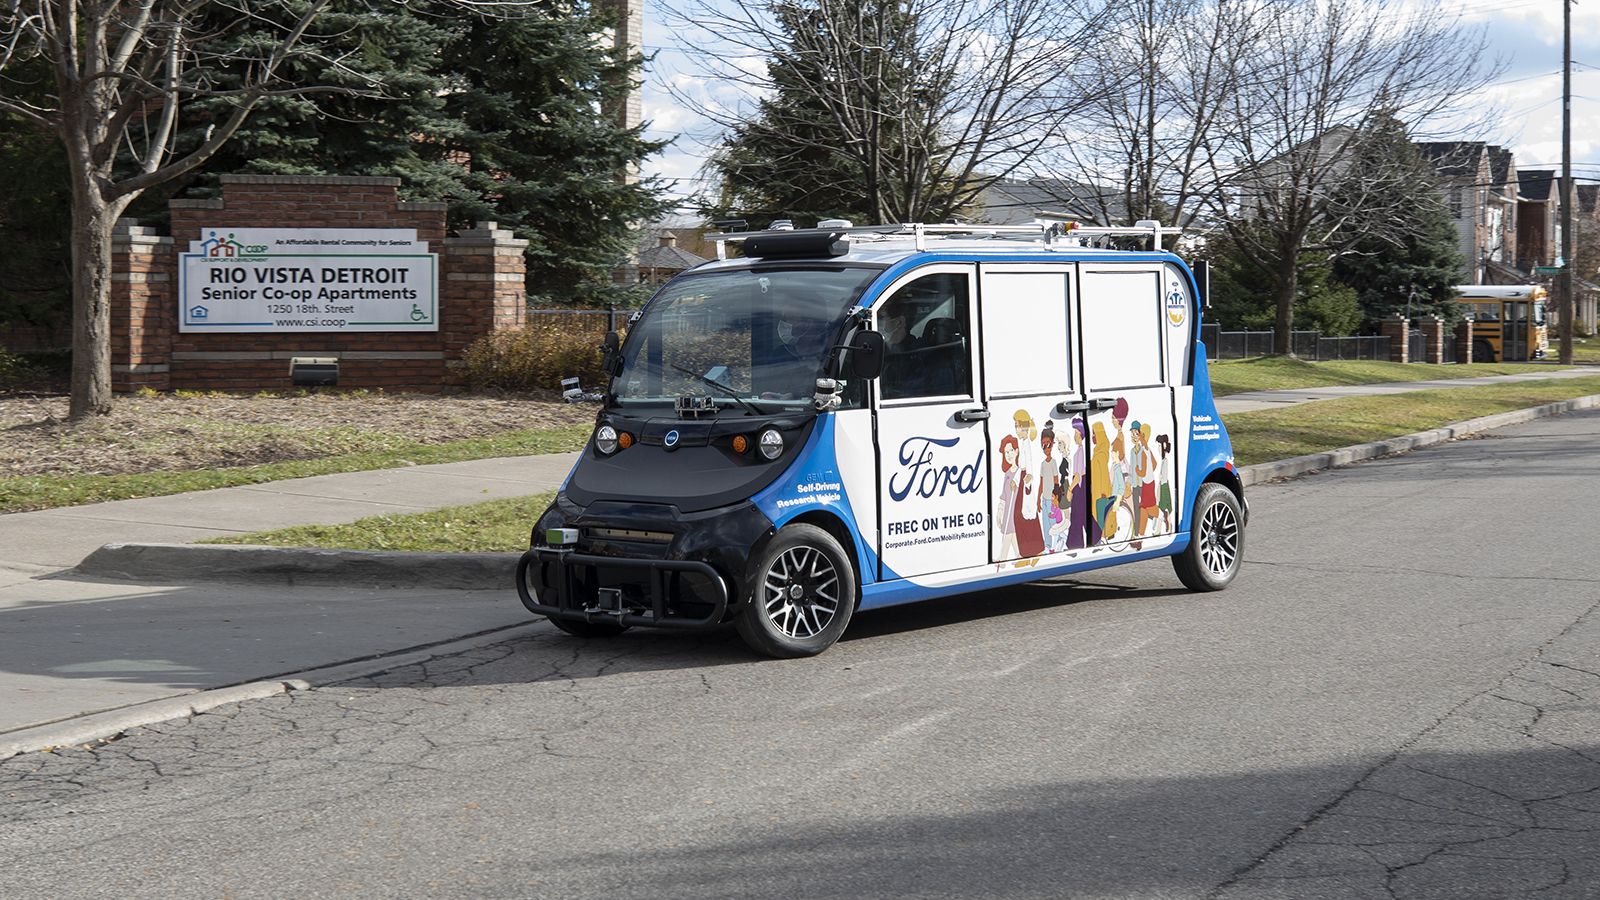 Η Ford συνδυάζει τις τεχνολογίες αυτόνομης οδήγησης με τη φιλανθρωπική δράση.